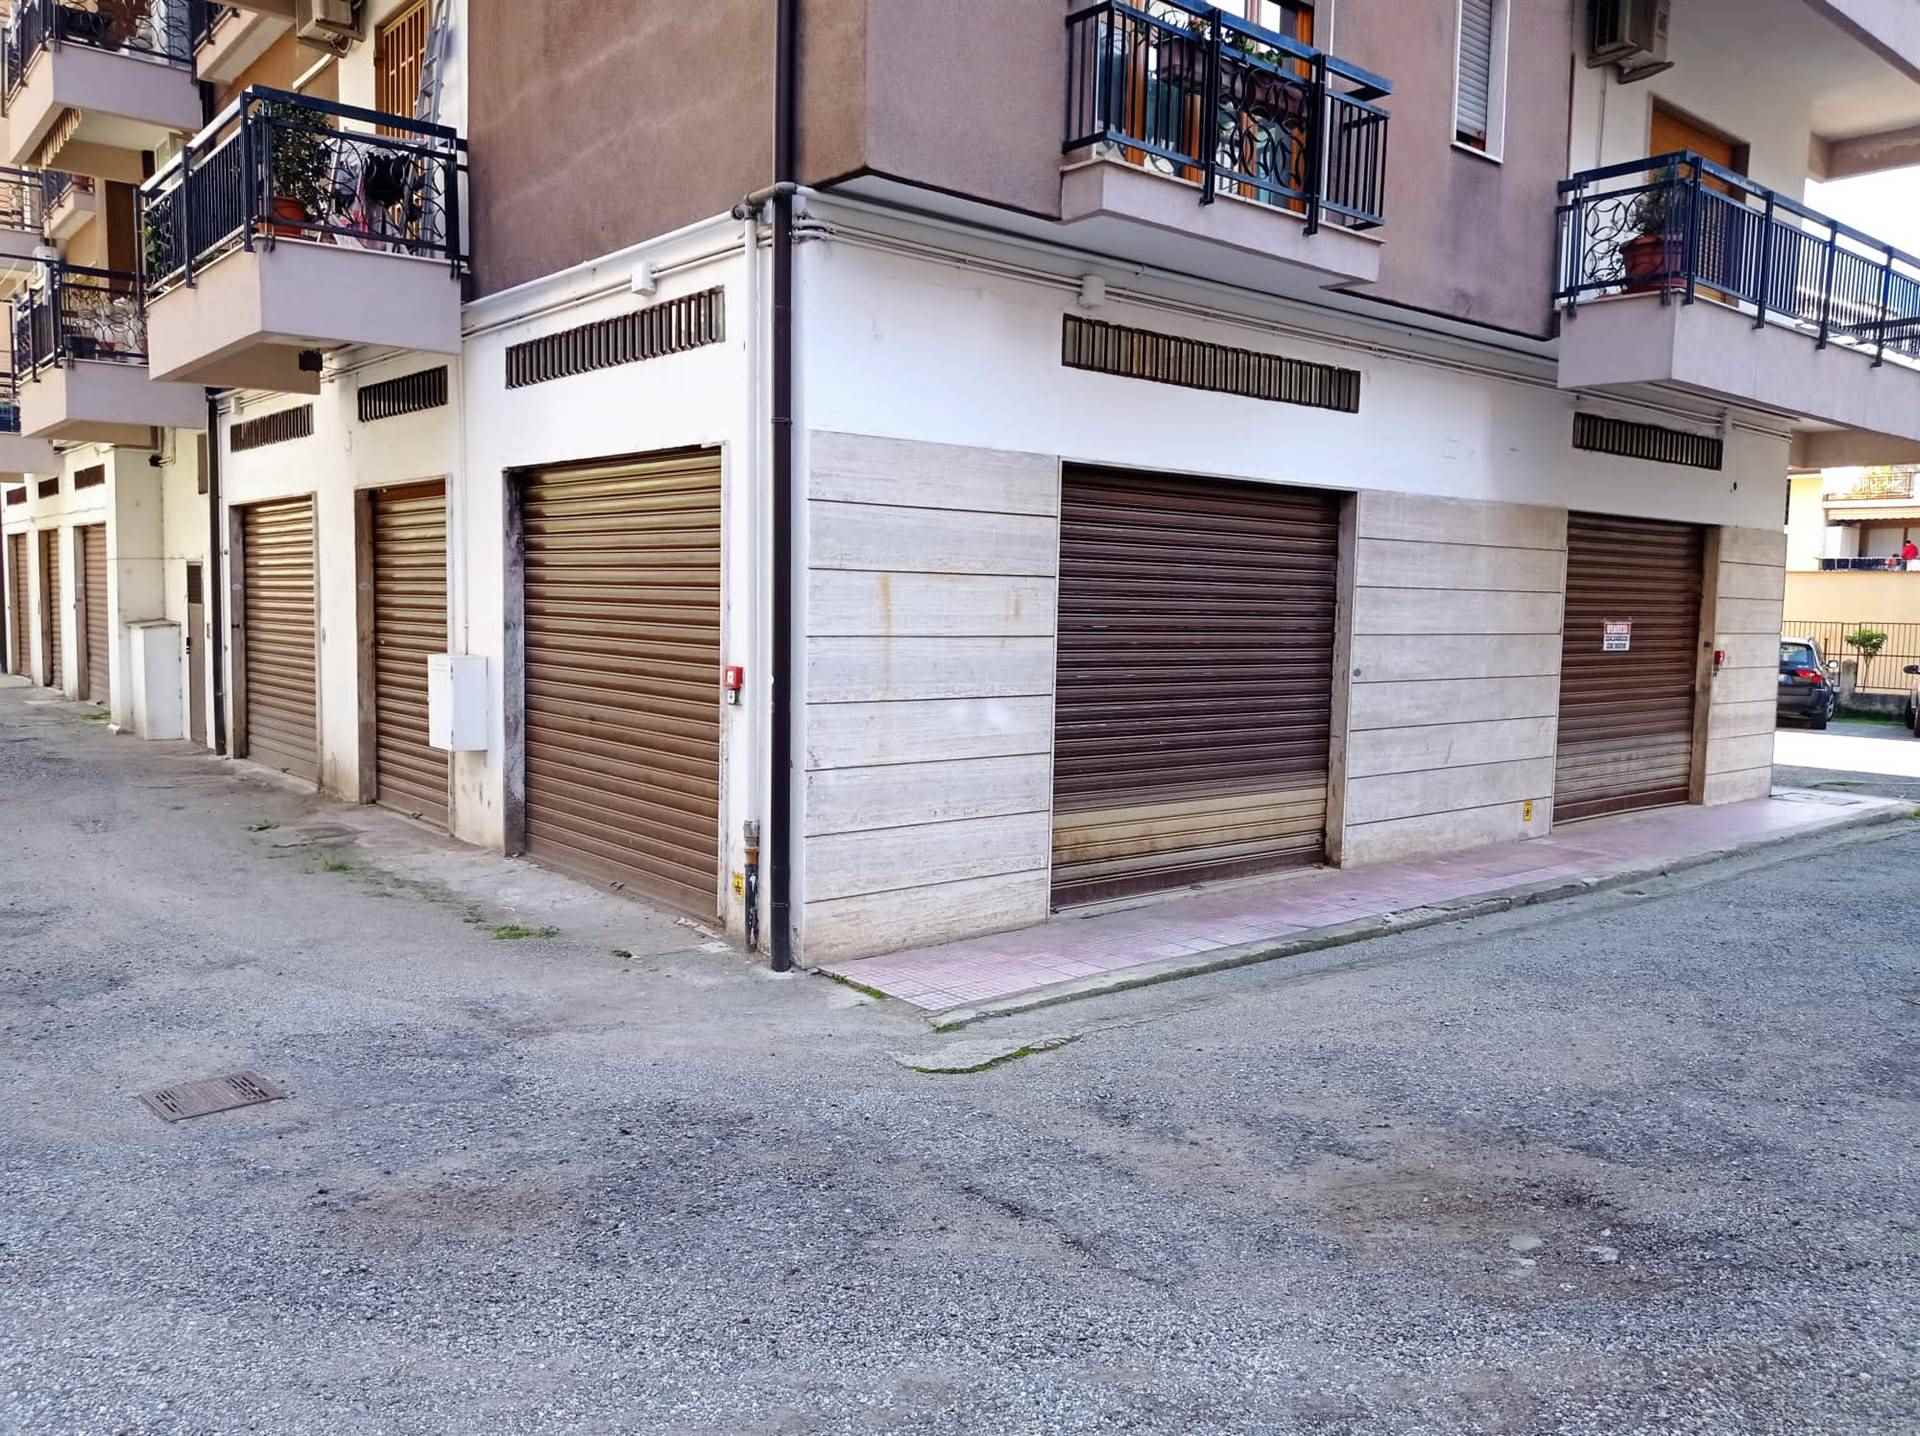 Immobile Commerciale in vendita a Cosenza, 1 locali, zona Panebianco, prezzo € 82.000 | PortaleAgenzieImmobiliari.it